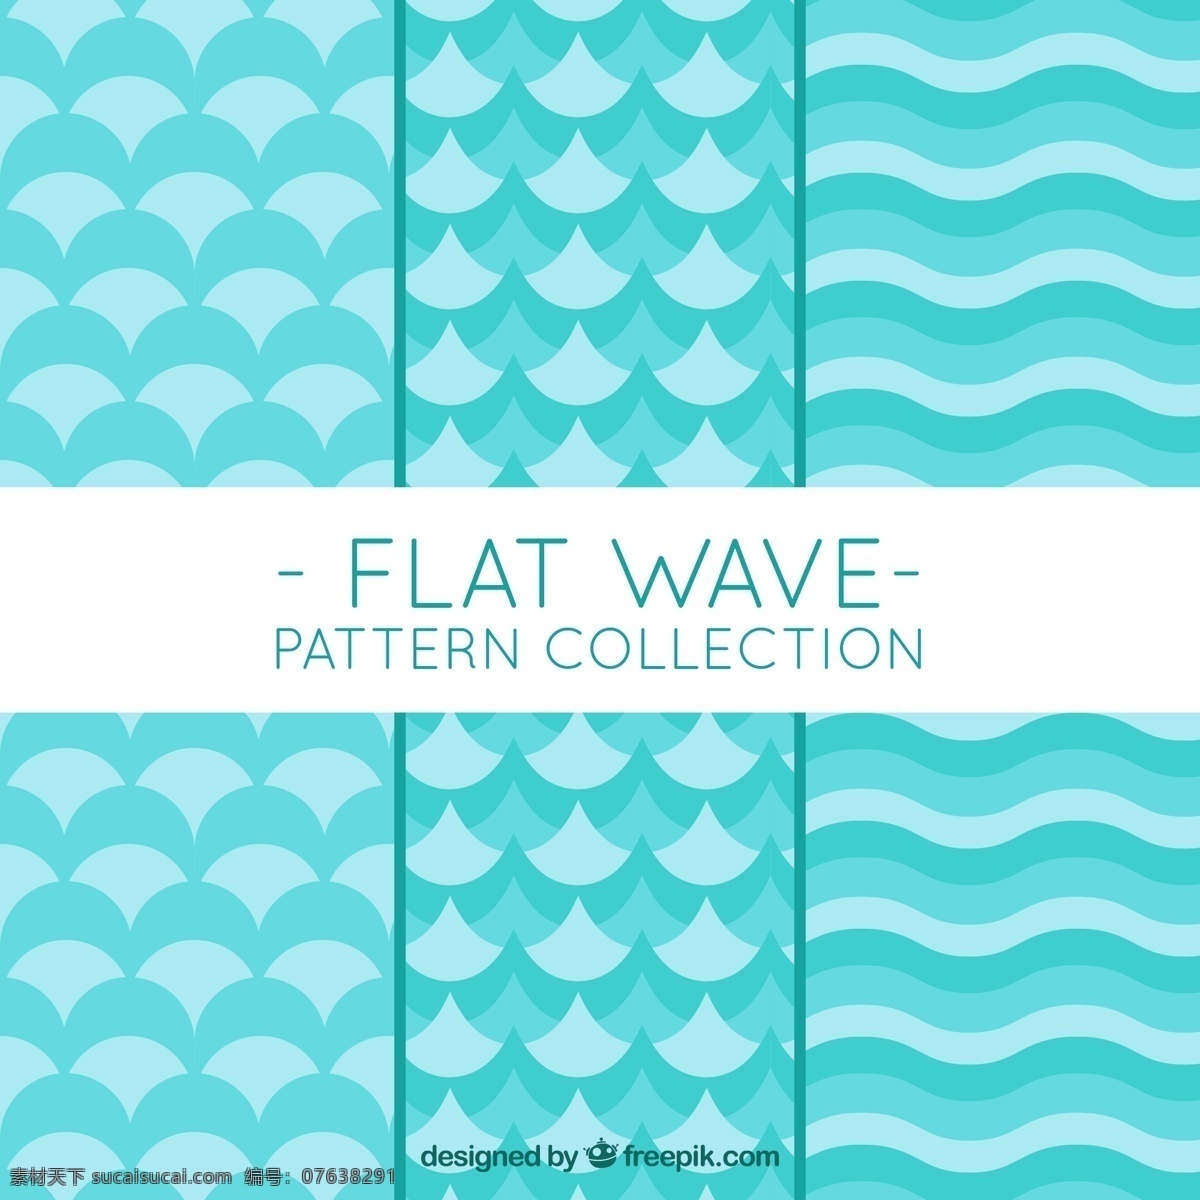 平面设计 中 几何 波形 背景 图案 抽象 水 自然 海洋 波浪 无缝 流体 电流